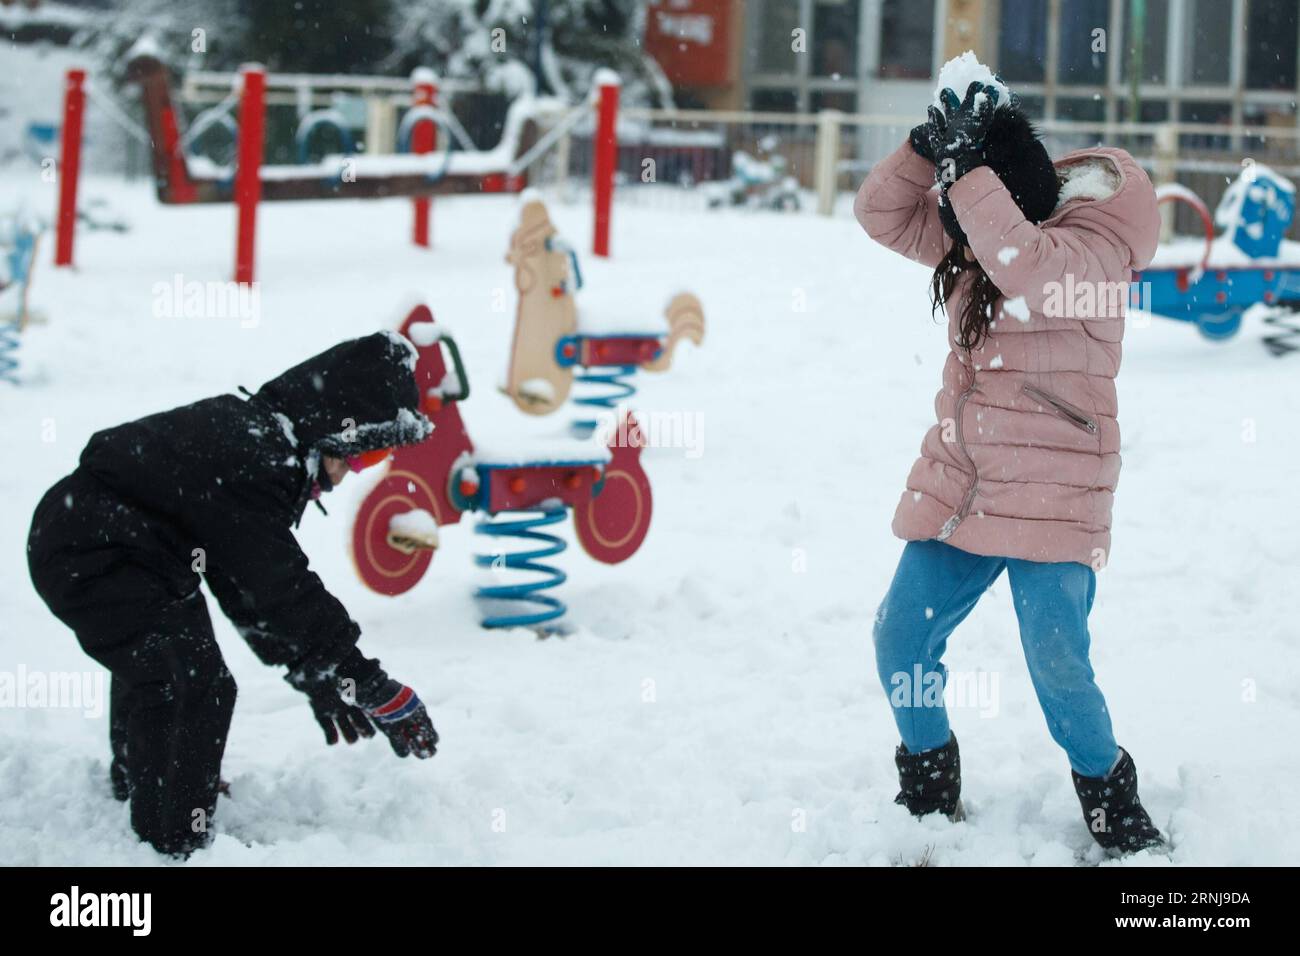 (170109) -- GOLANHÖHEN, 9. Januar 2017 -- Kinder spielen im Schnee in El Rom auf den Golanhöhen, 9. Januar 2017. ) MIDEAST-GOLAN-HÖHEN-SCHNEE JINI PUBLICATIONxNOTxINxCHN Golan-HÖHEN 9. Januar 2017 Kinder spielen im Schnee in El Rom AUF den Golan-HÖHEN 9. Januar 2017 Mideast Golan-HÖHEN Schnee Jini PUBLICATIONxNOTxINxCHN Stockfoto